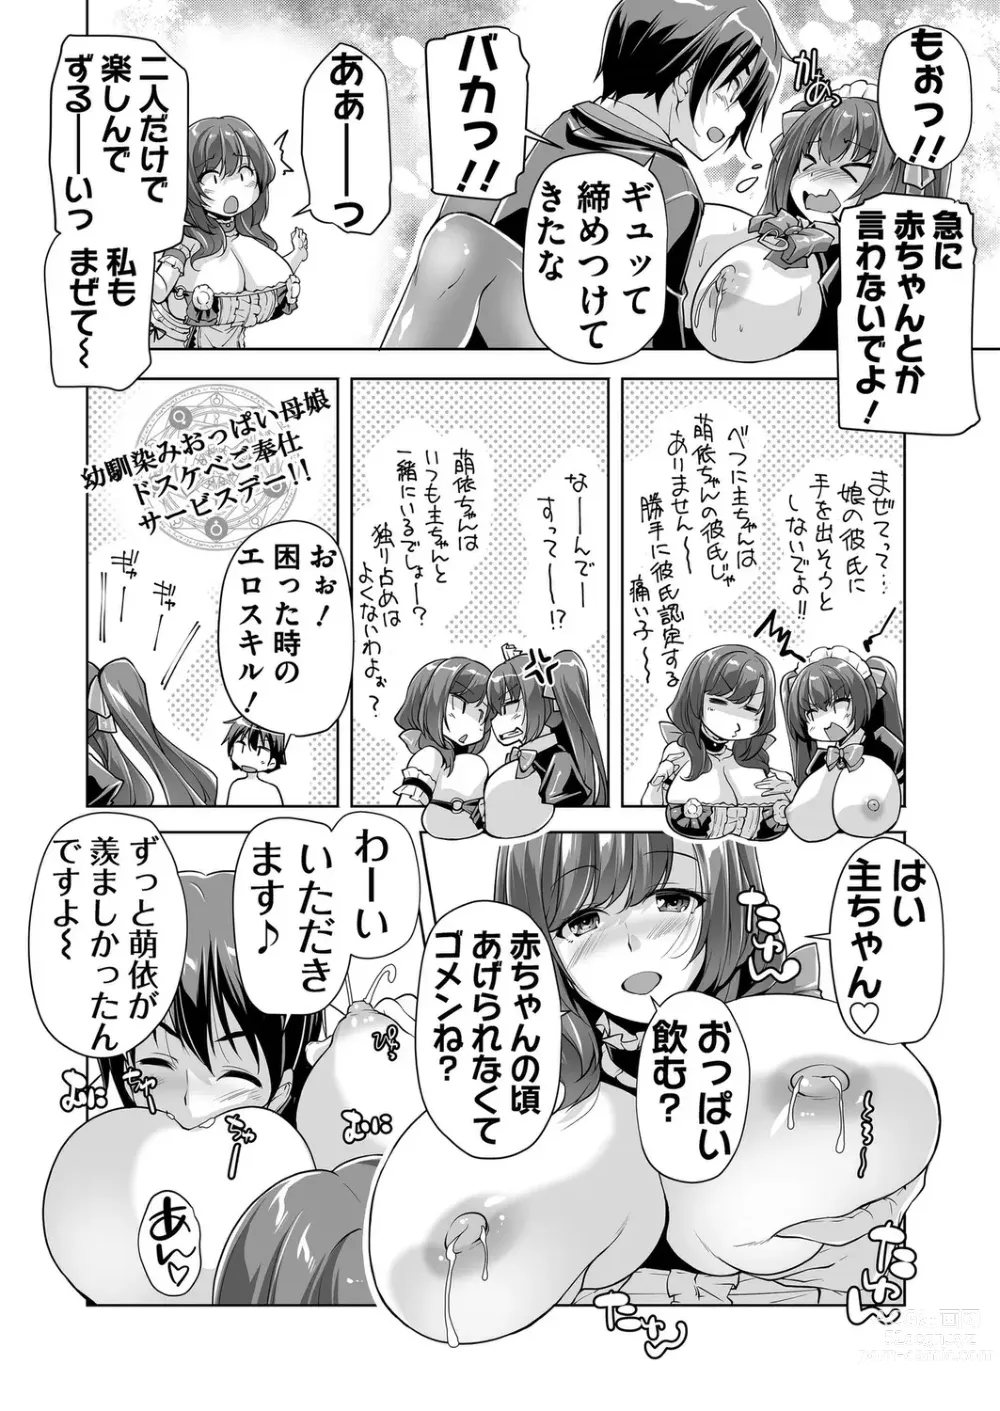 Page 188 of manga BugBug 2023-09